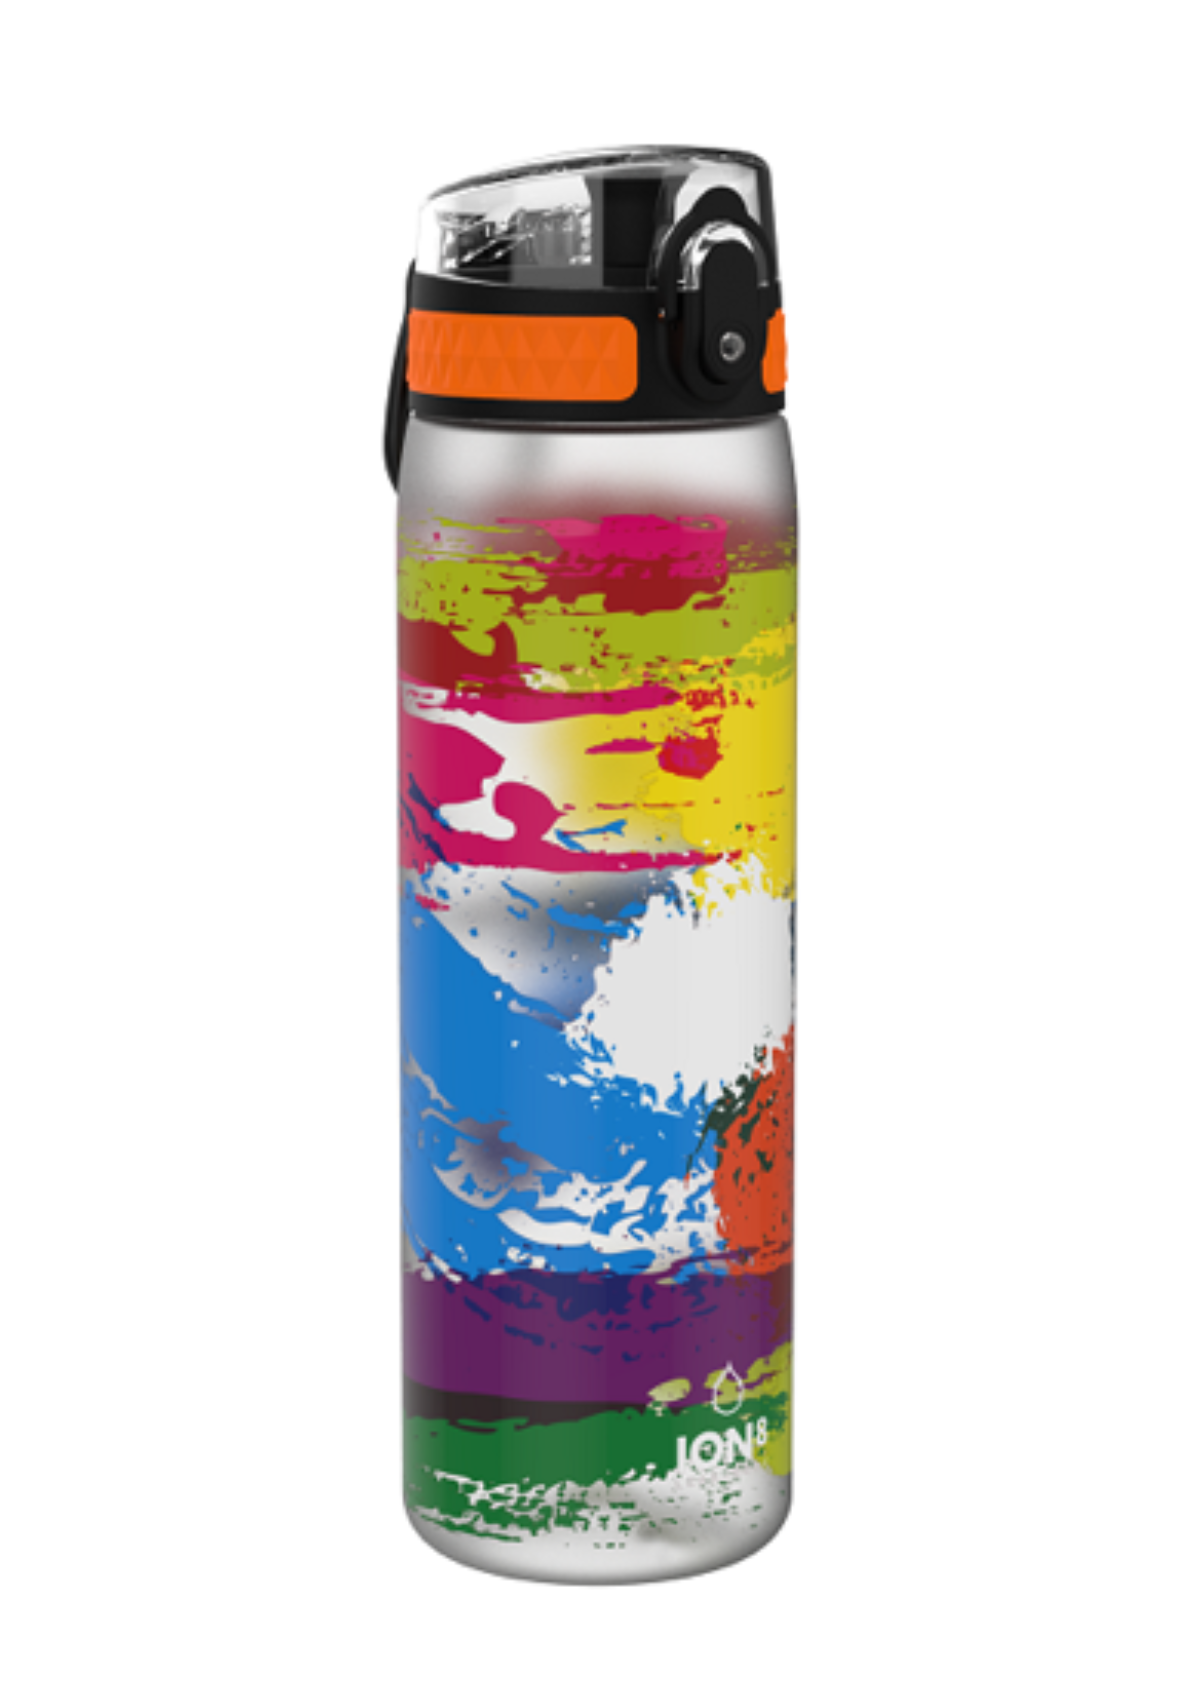 ION8 Water Bottle Leak Proof 500ml BPA Free